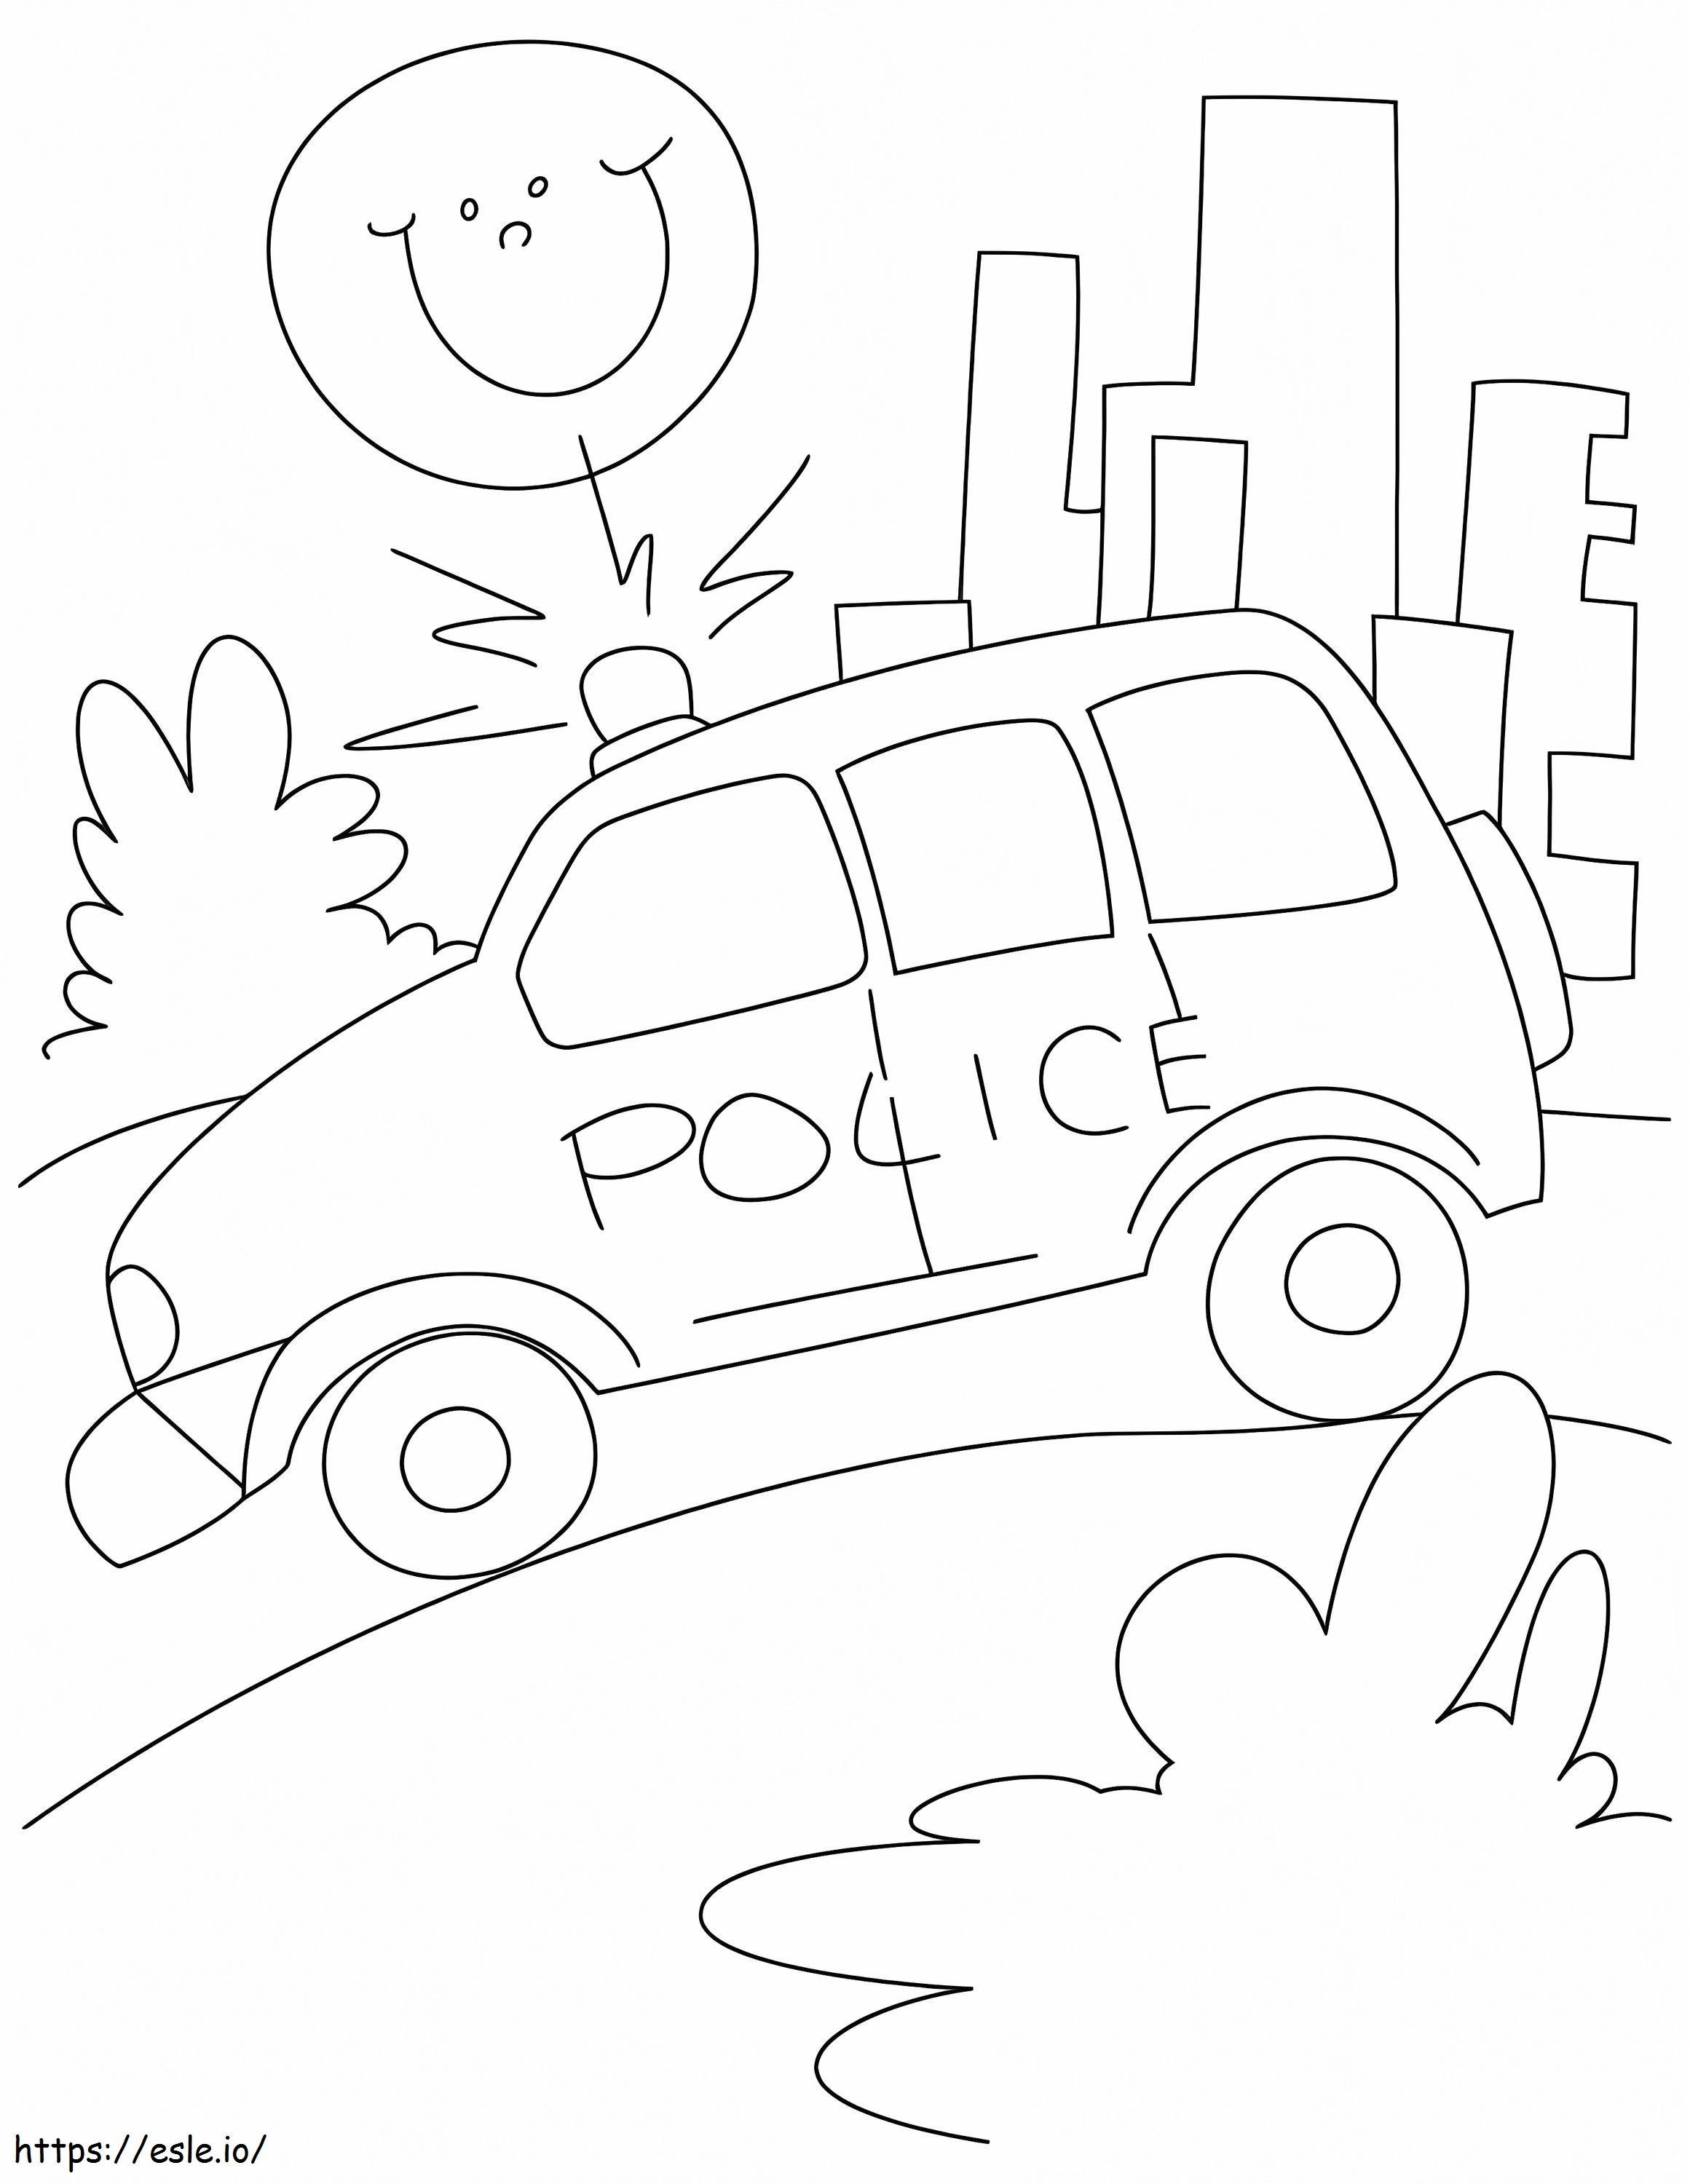 Carro a gasolina da polícia na estrada para colorir